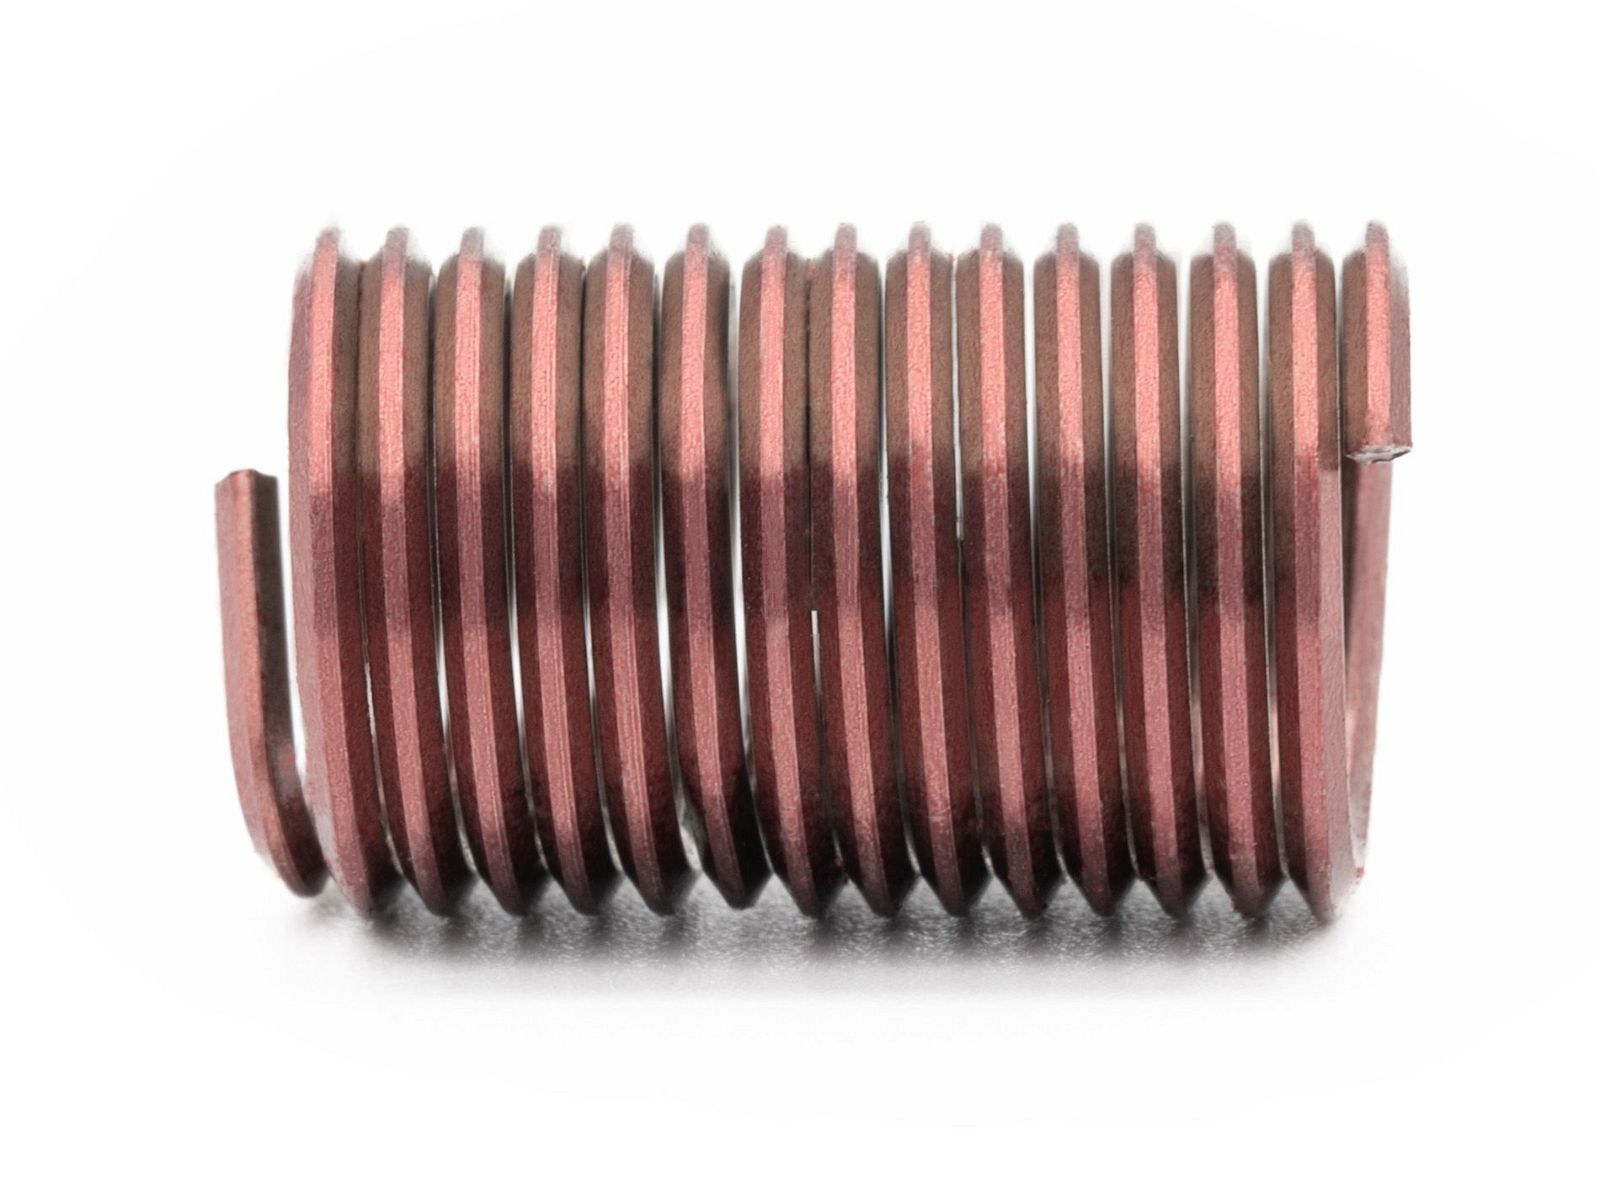 BaerCoil Drahtgewindeeinsätze UNC No. 10 x 24 - 2,5 D (12,07 mm) - screw grip (schraubensichernd) - 100 Stück